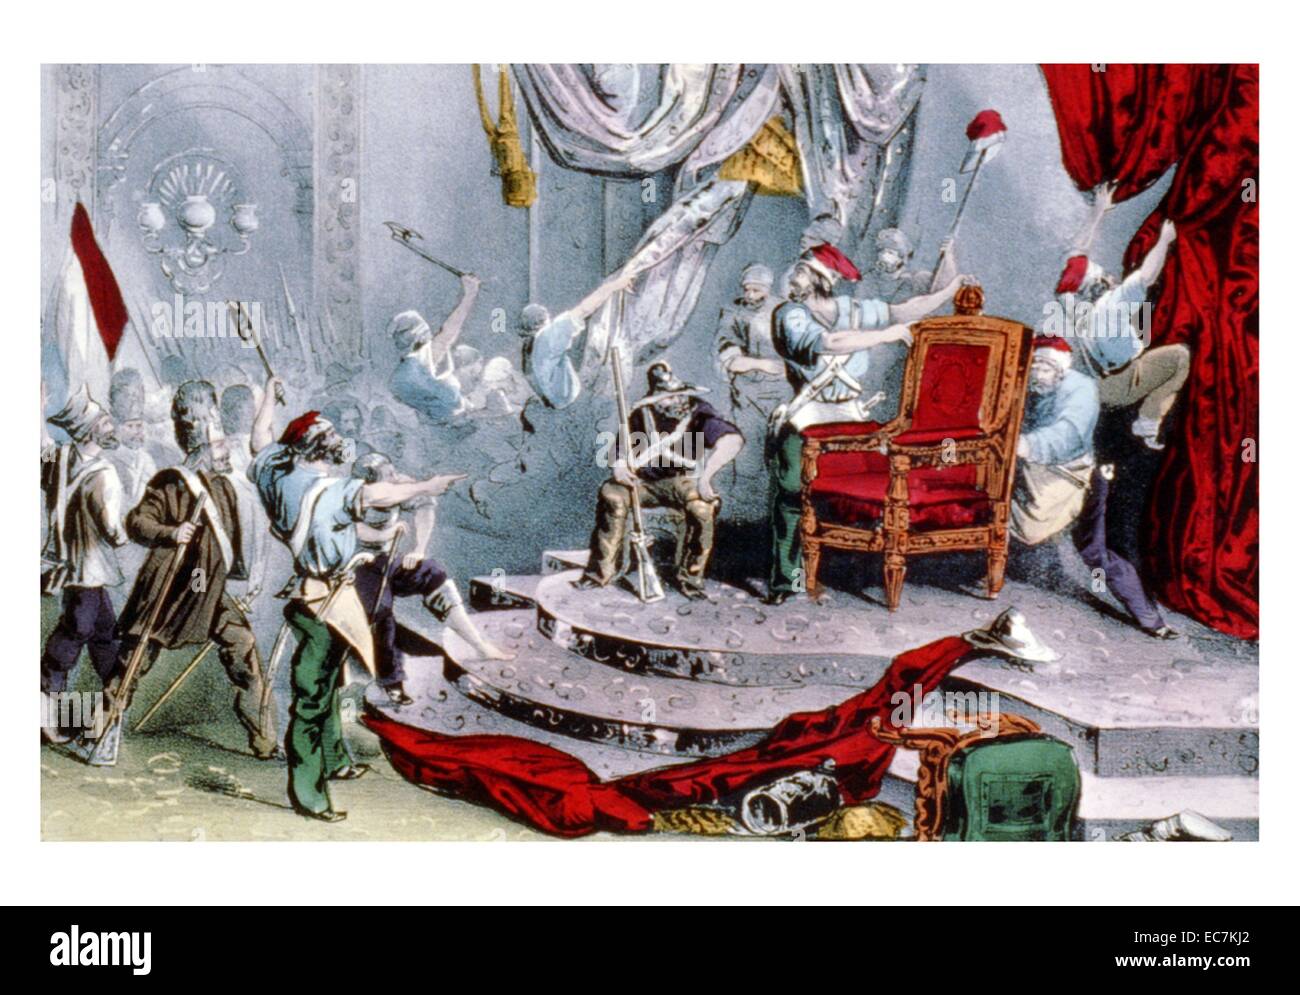 La rivoluzione francese: Scena del trono-sala delle Tuileries, 1848. Il francese Seconda repubblica fu il governo repubblicano della Francia tra la rivoluzione del 1848 e il 1851 il colpo di stato di Louis-Napoléon Bonaparte che ha avviato il Secondo Impero. Foto Stock